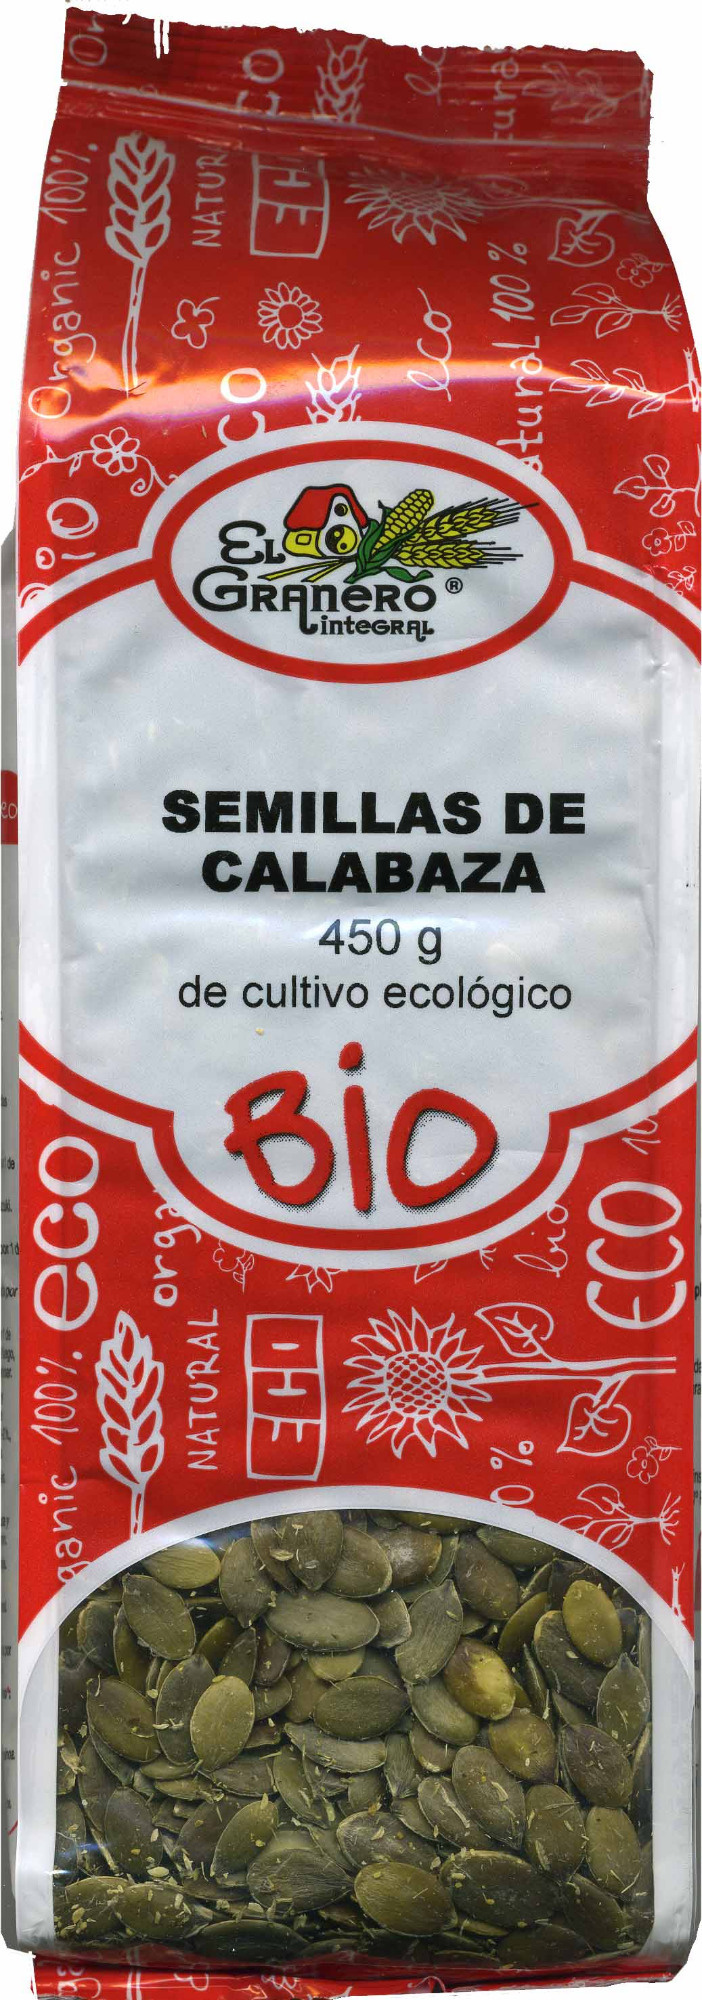 Semillas de Calabaza - Product - es